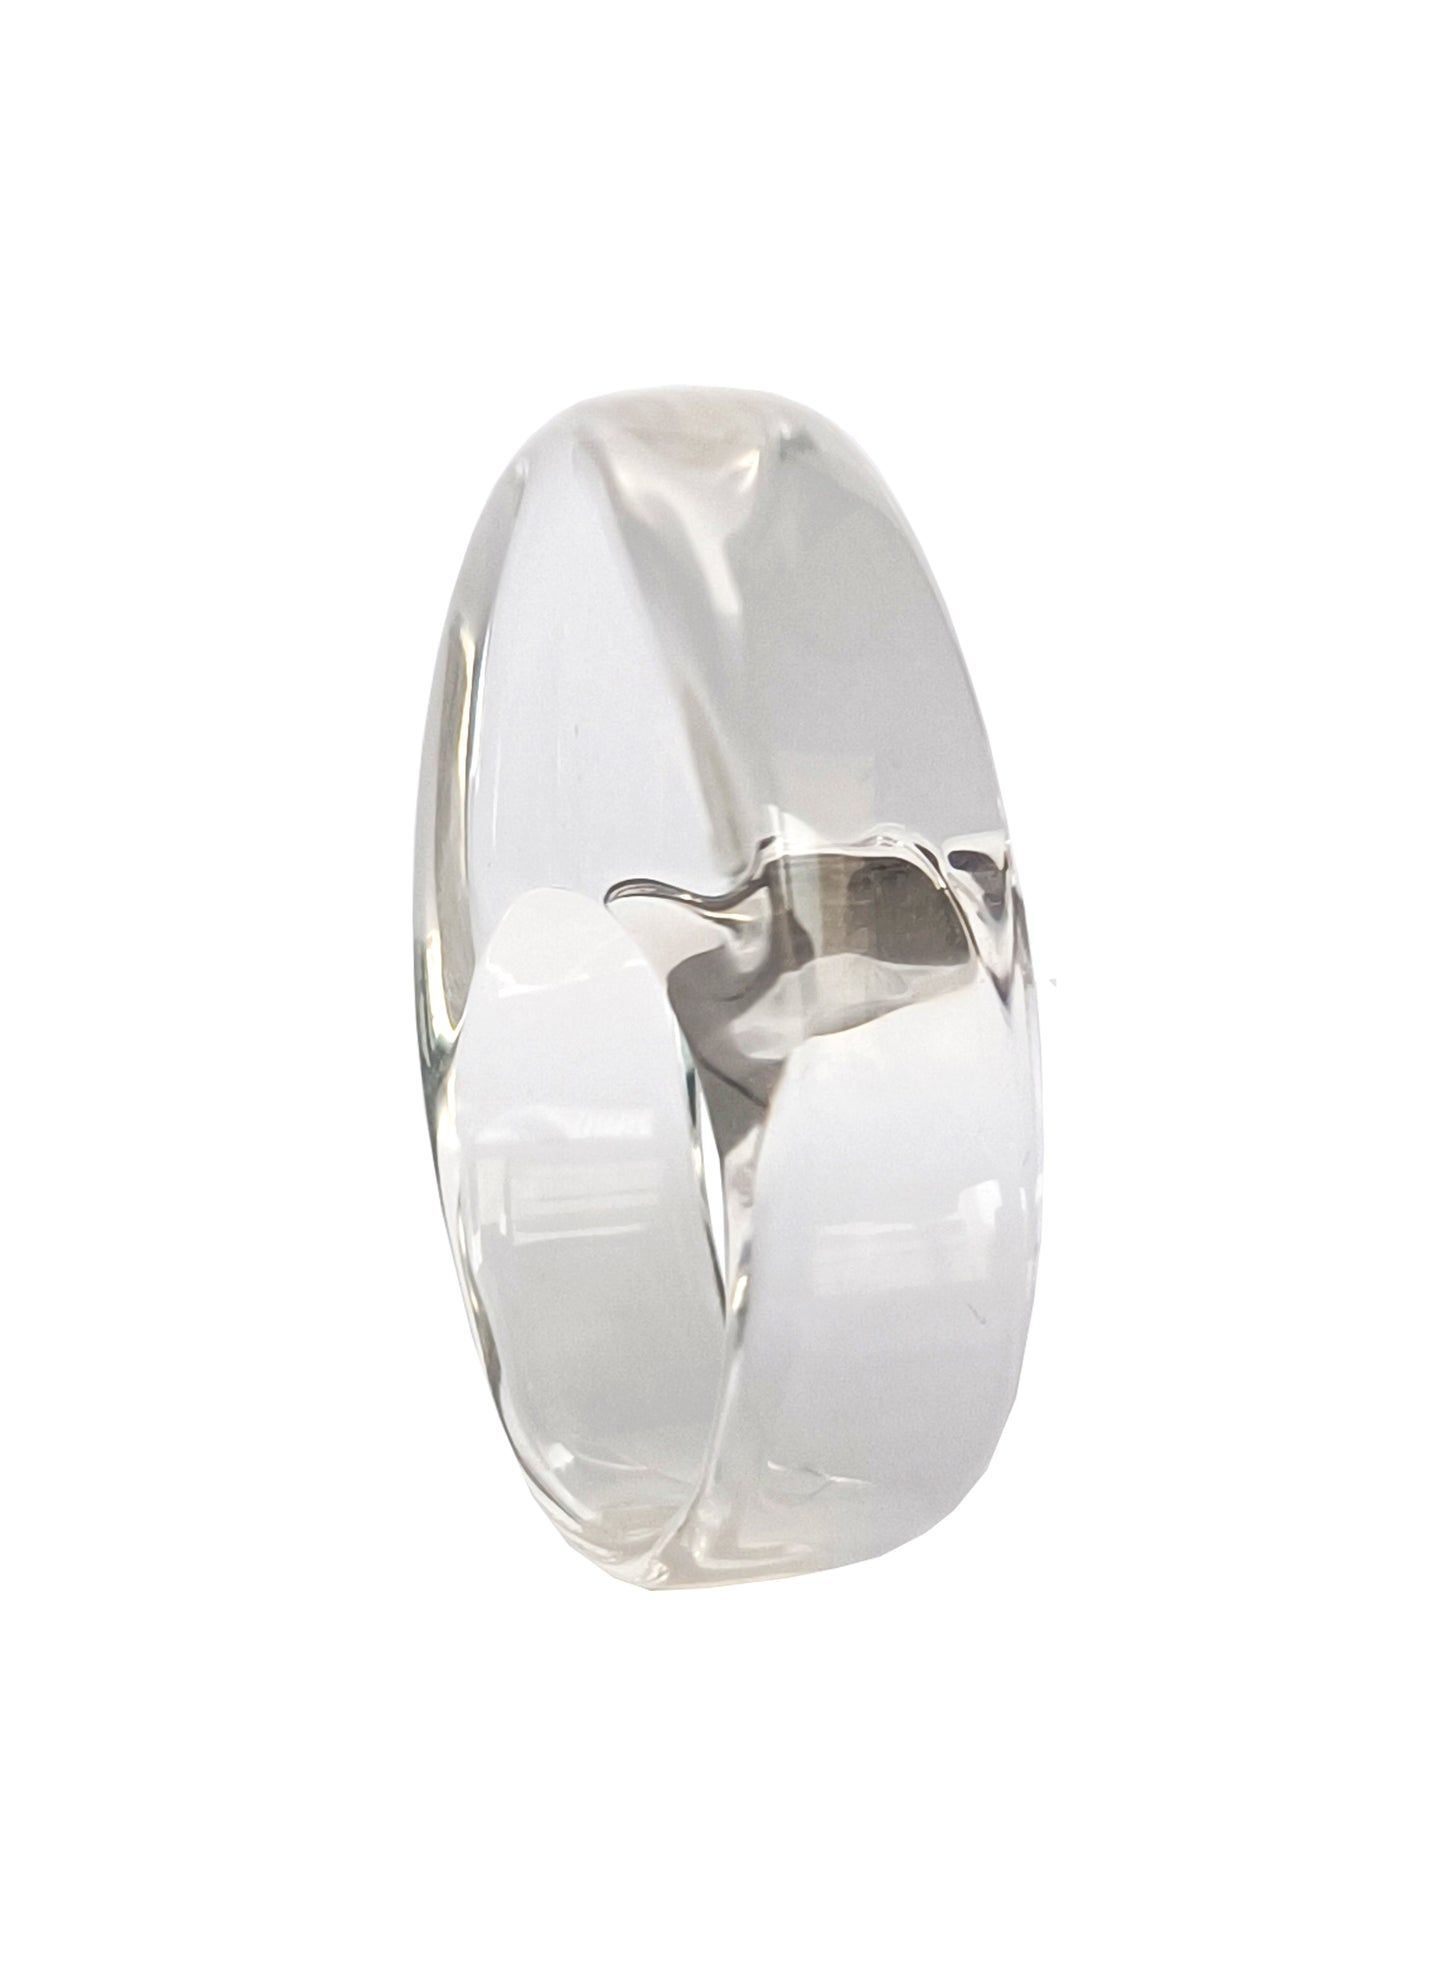 Klarer Acrylring, ovaler kräftiger transparenter Ring, Lucite-Statement-Ring